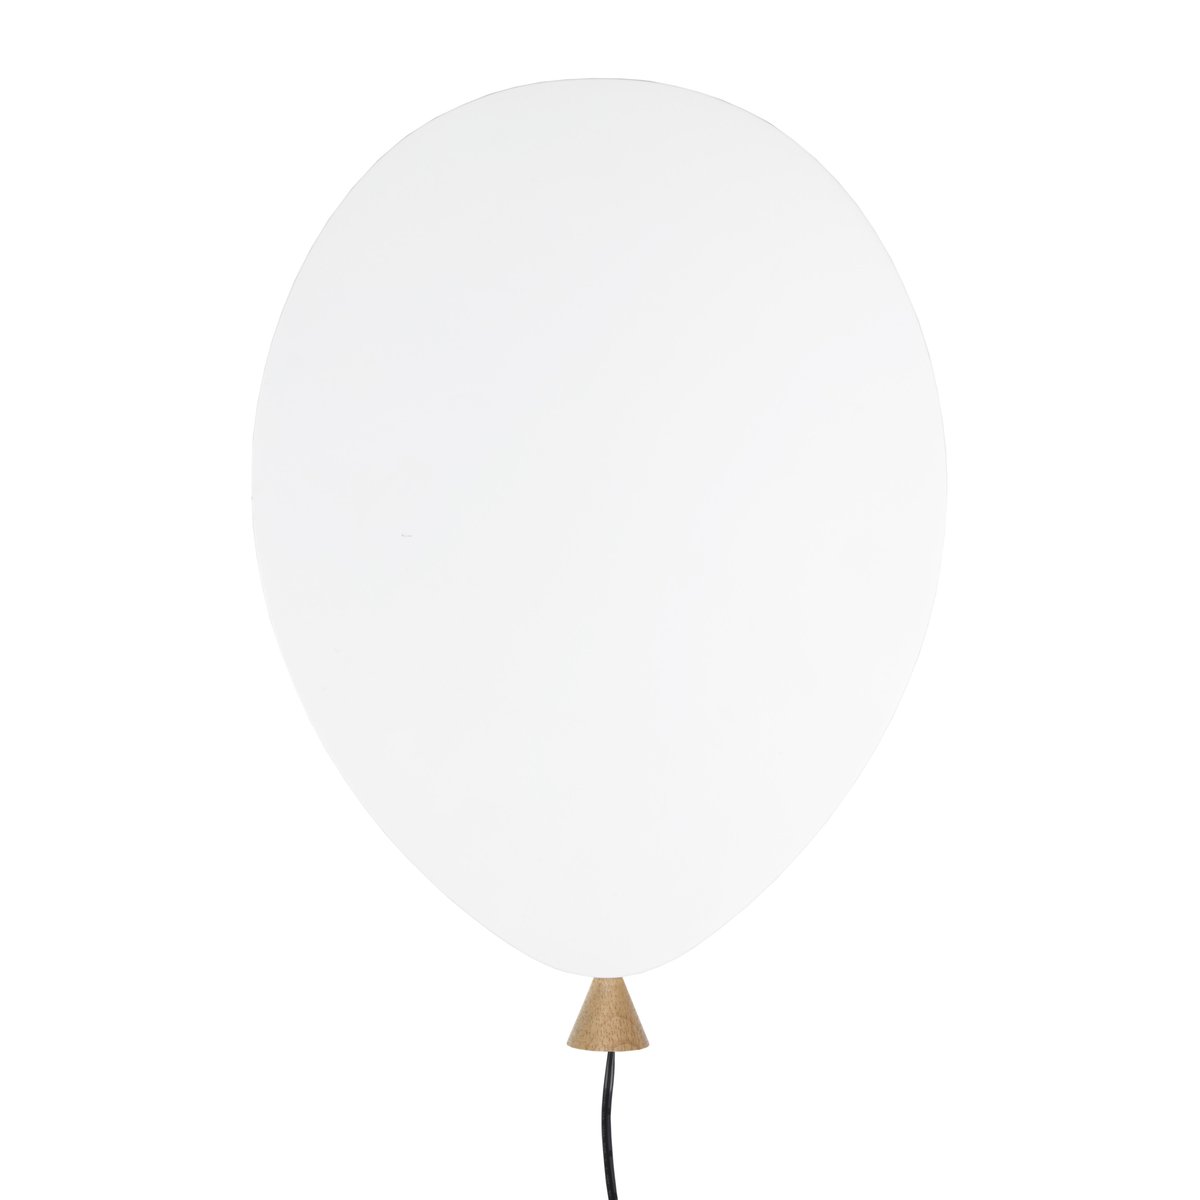 Globen Lighting Balloon væglampe hvid-ask